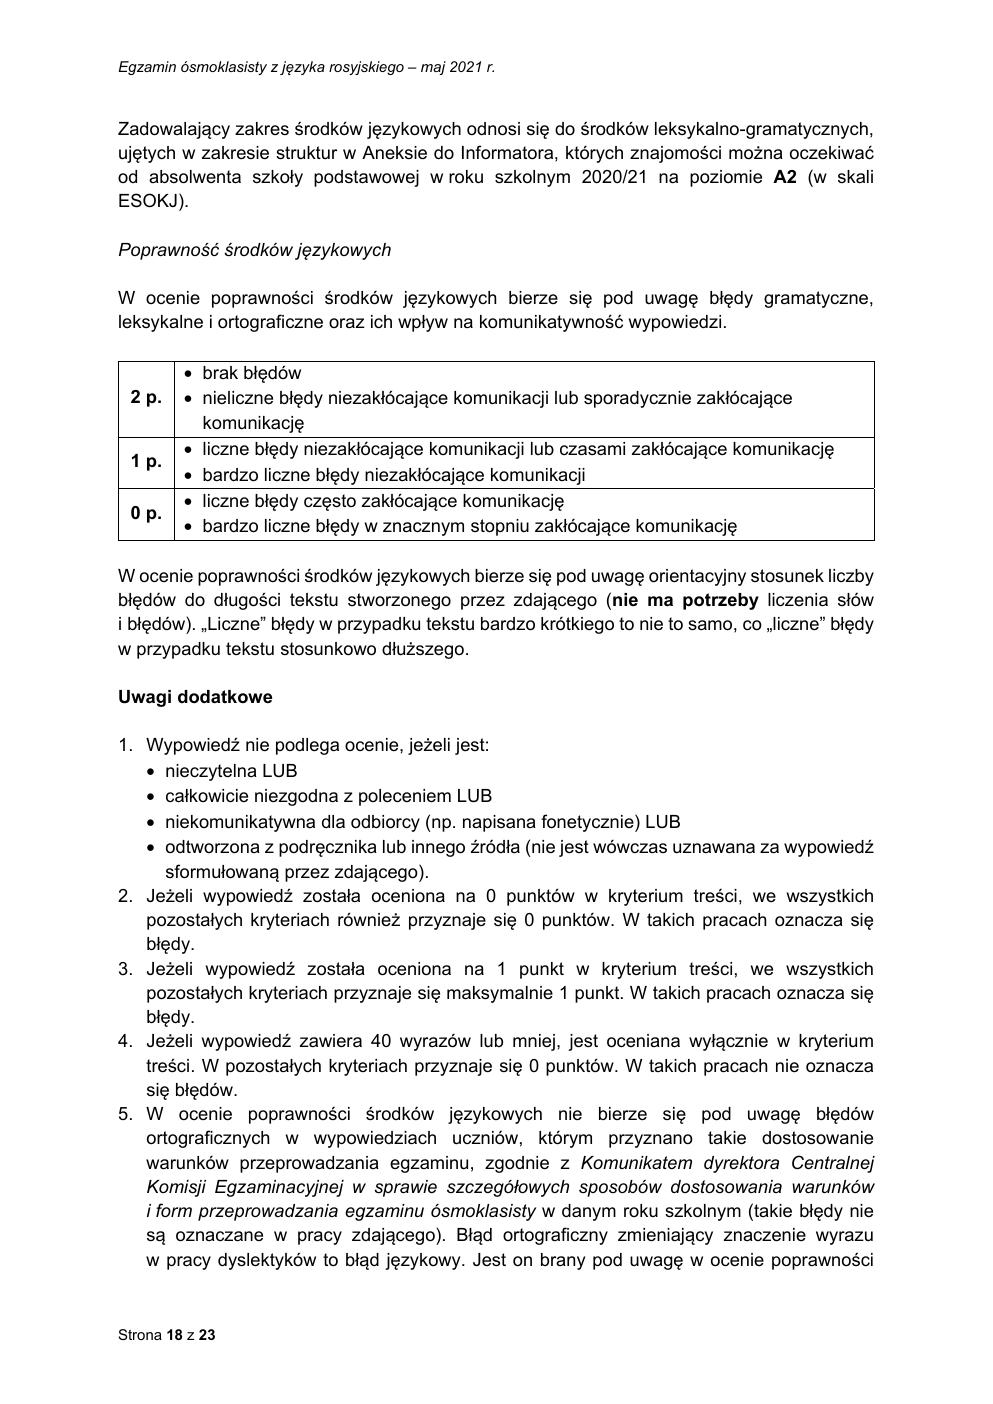 odpowiedzi - język rosyjski - egzamin ósmoklasisty 2021-18